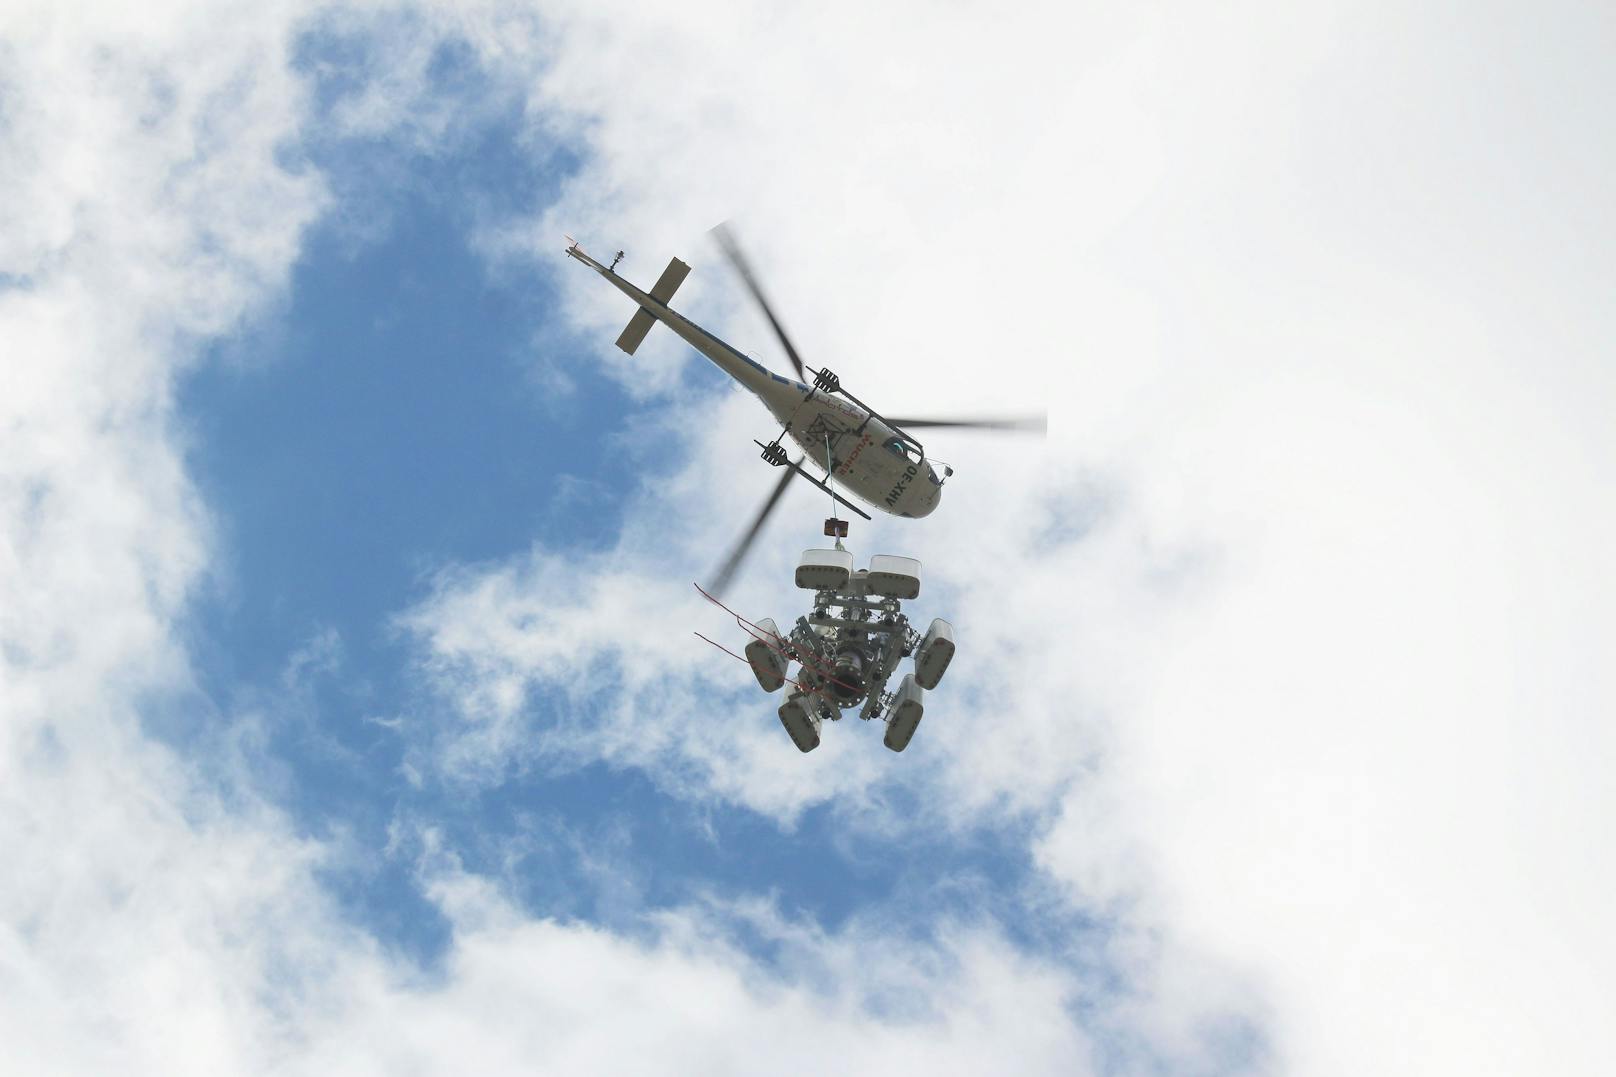 Hubschrauber hilft beim Bau von 5G-Mobilfunkstation